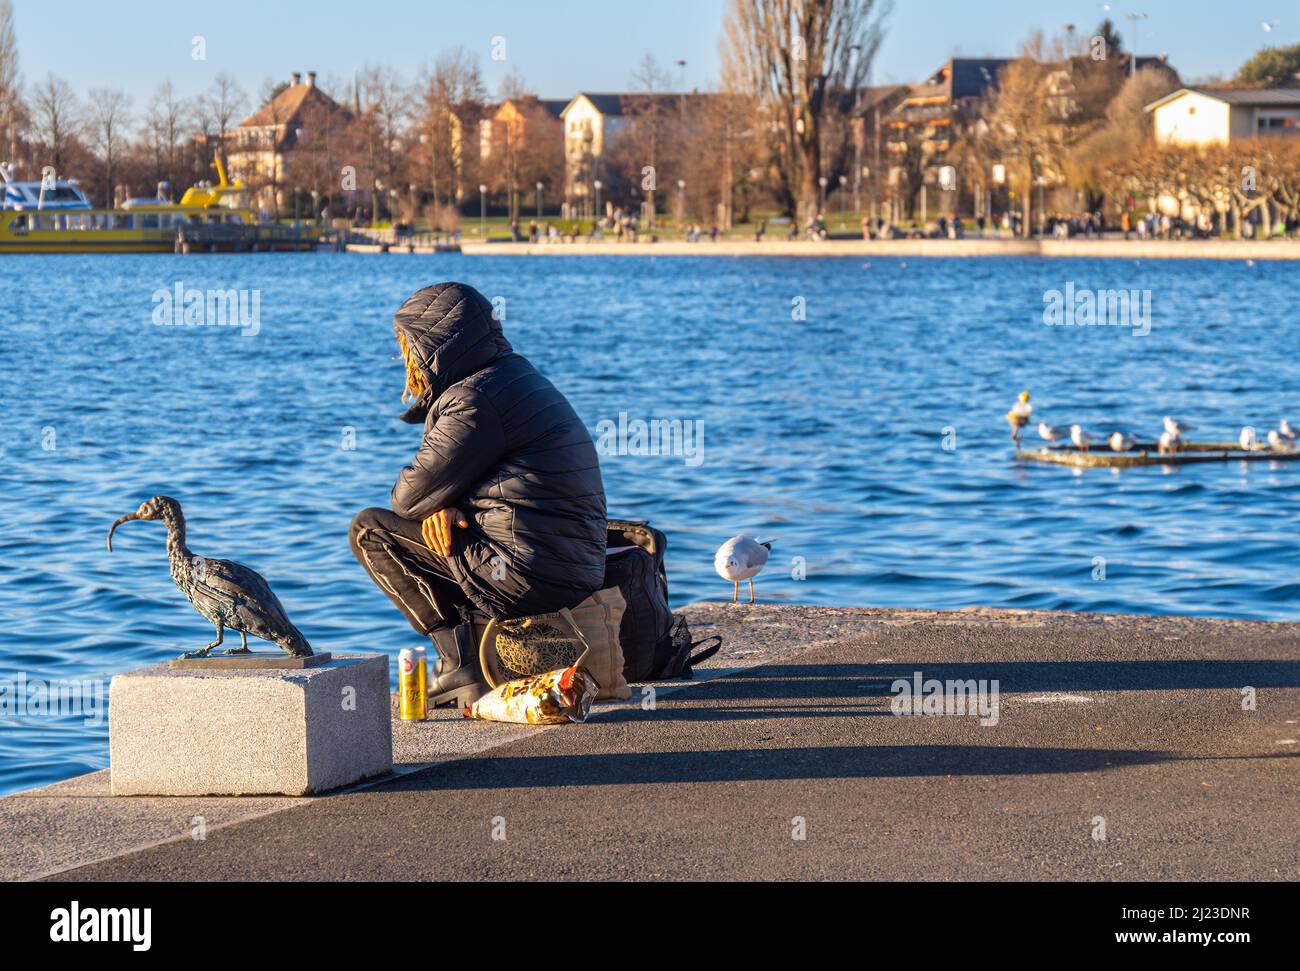 Zug, Schweiz - 31. Dezember 2021: Eine Frau in Winterjacke sitzt am See und füttert Möwen Stockfoto